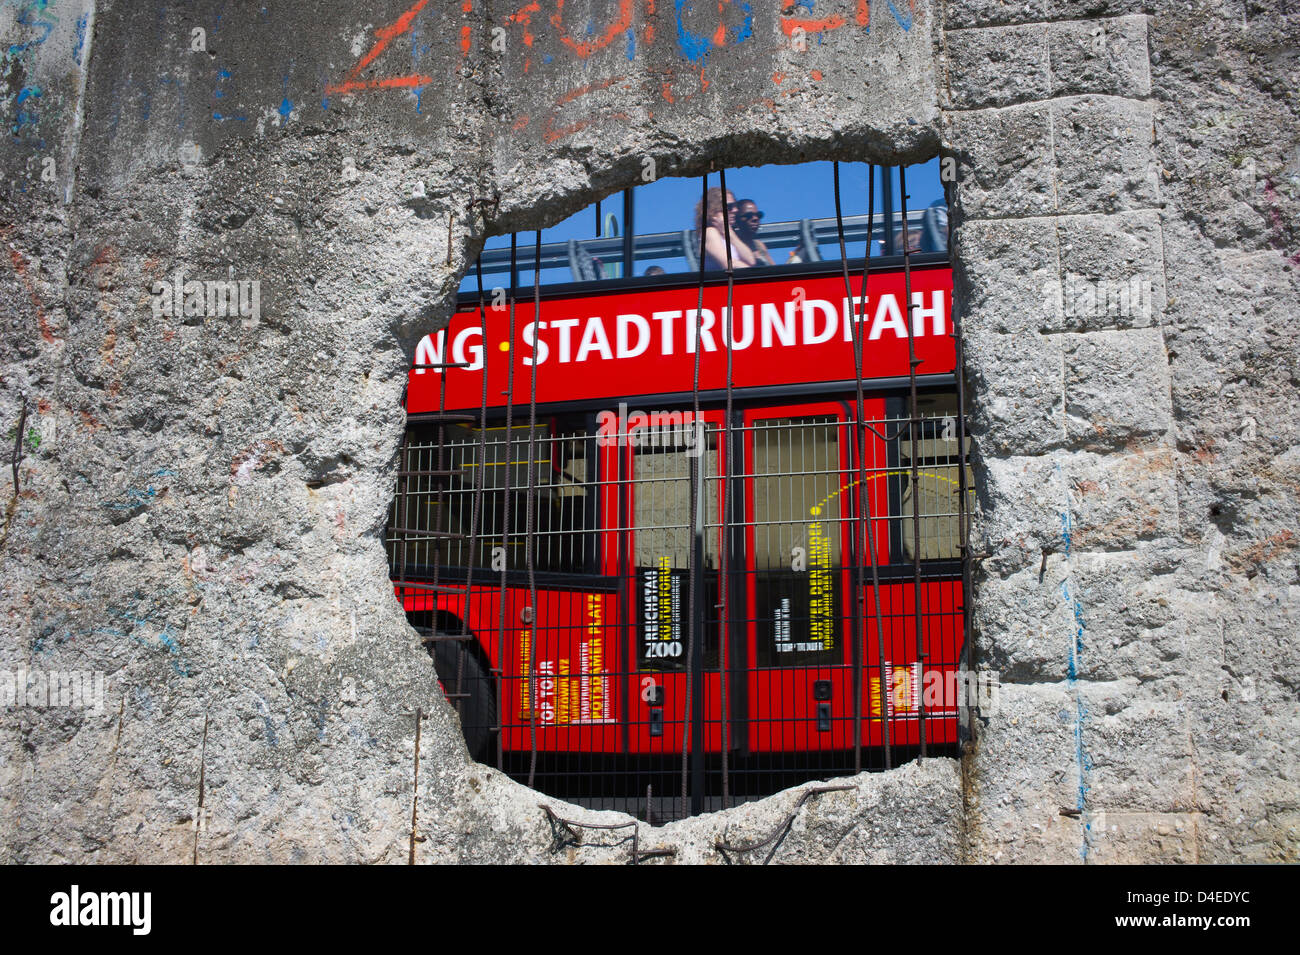 Berlin, Deutschland, sah Sightseeing Tour-Bus durch ein Loch in der Mauer Stockfoto